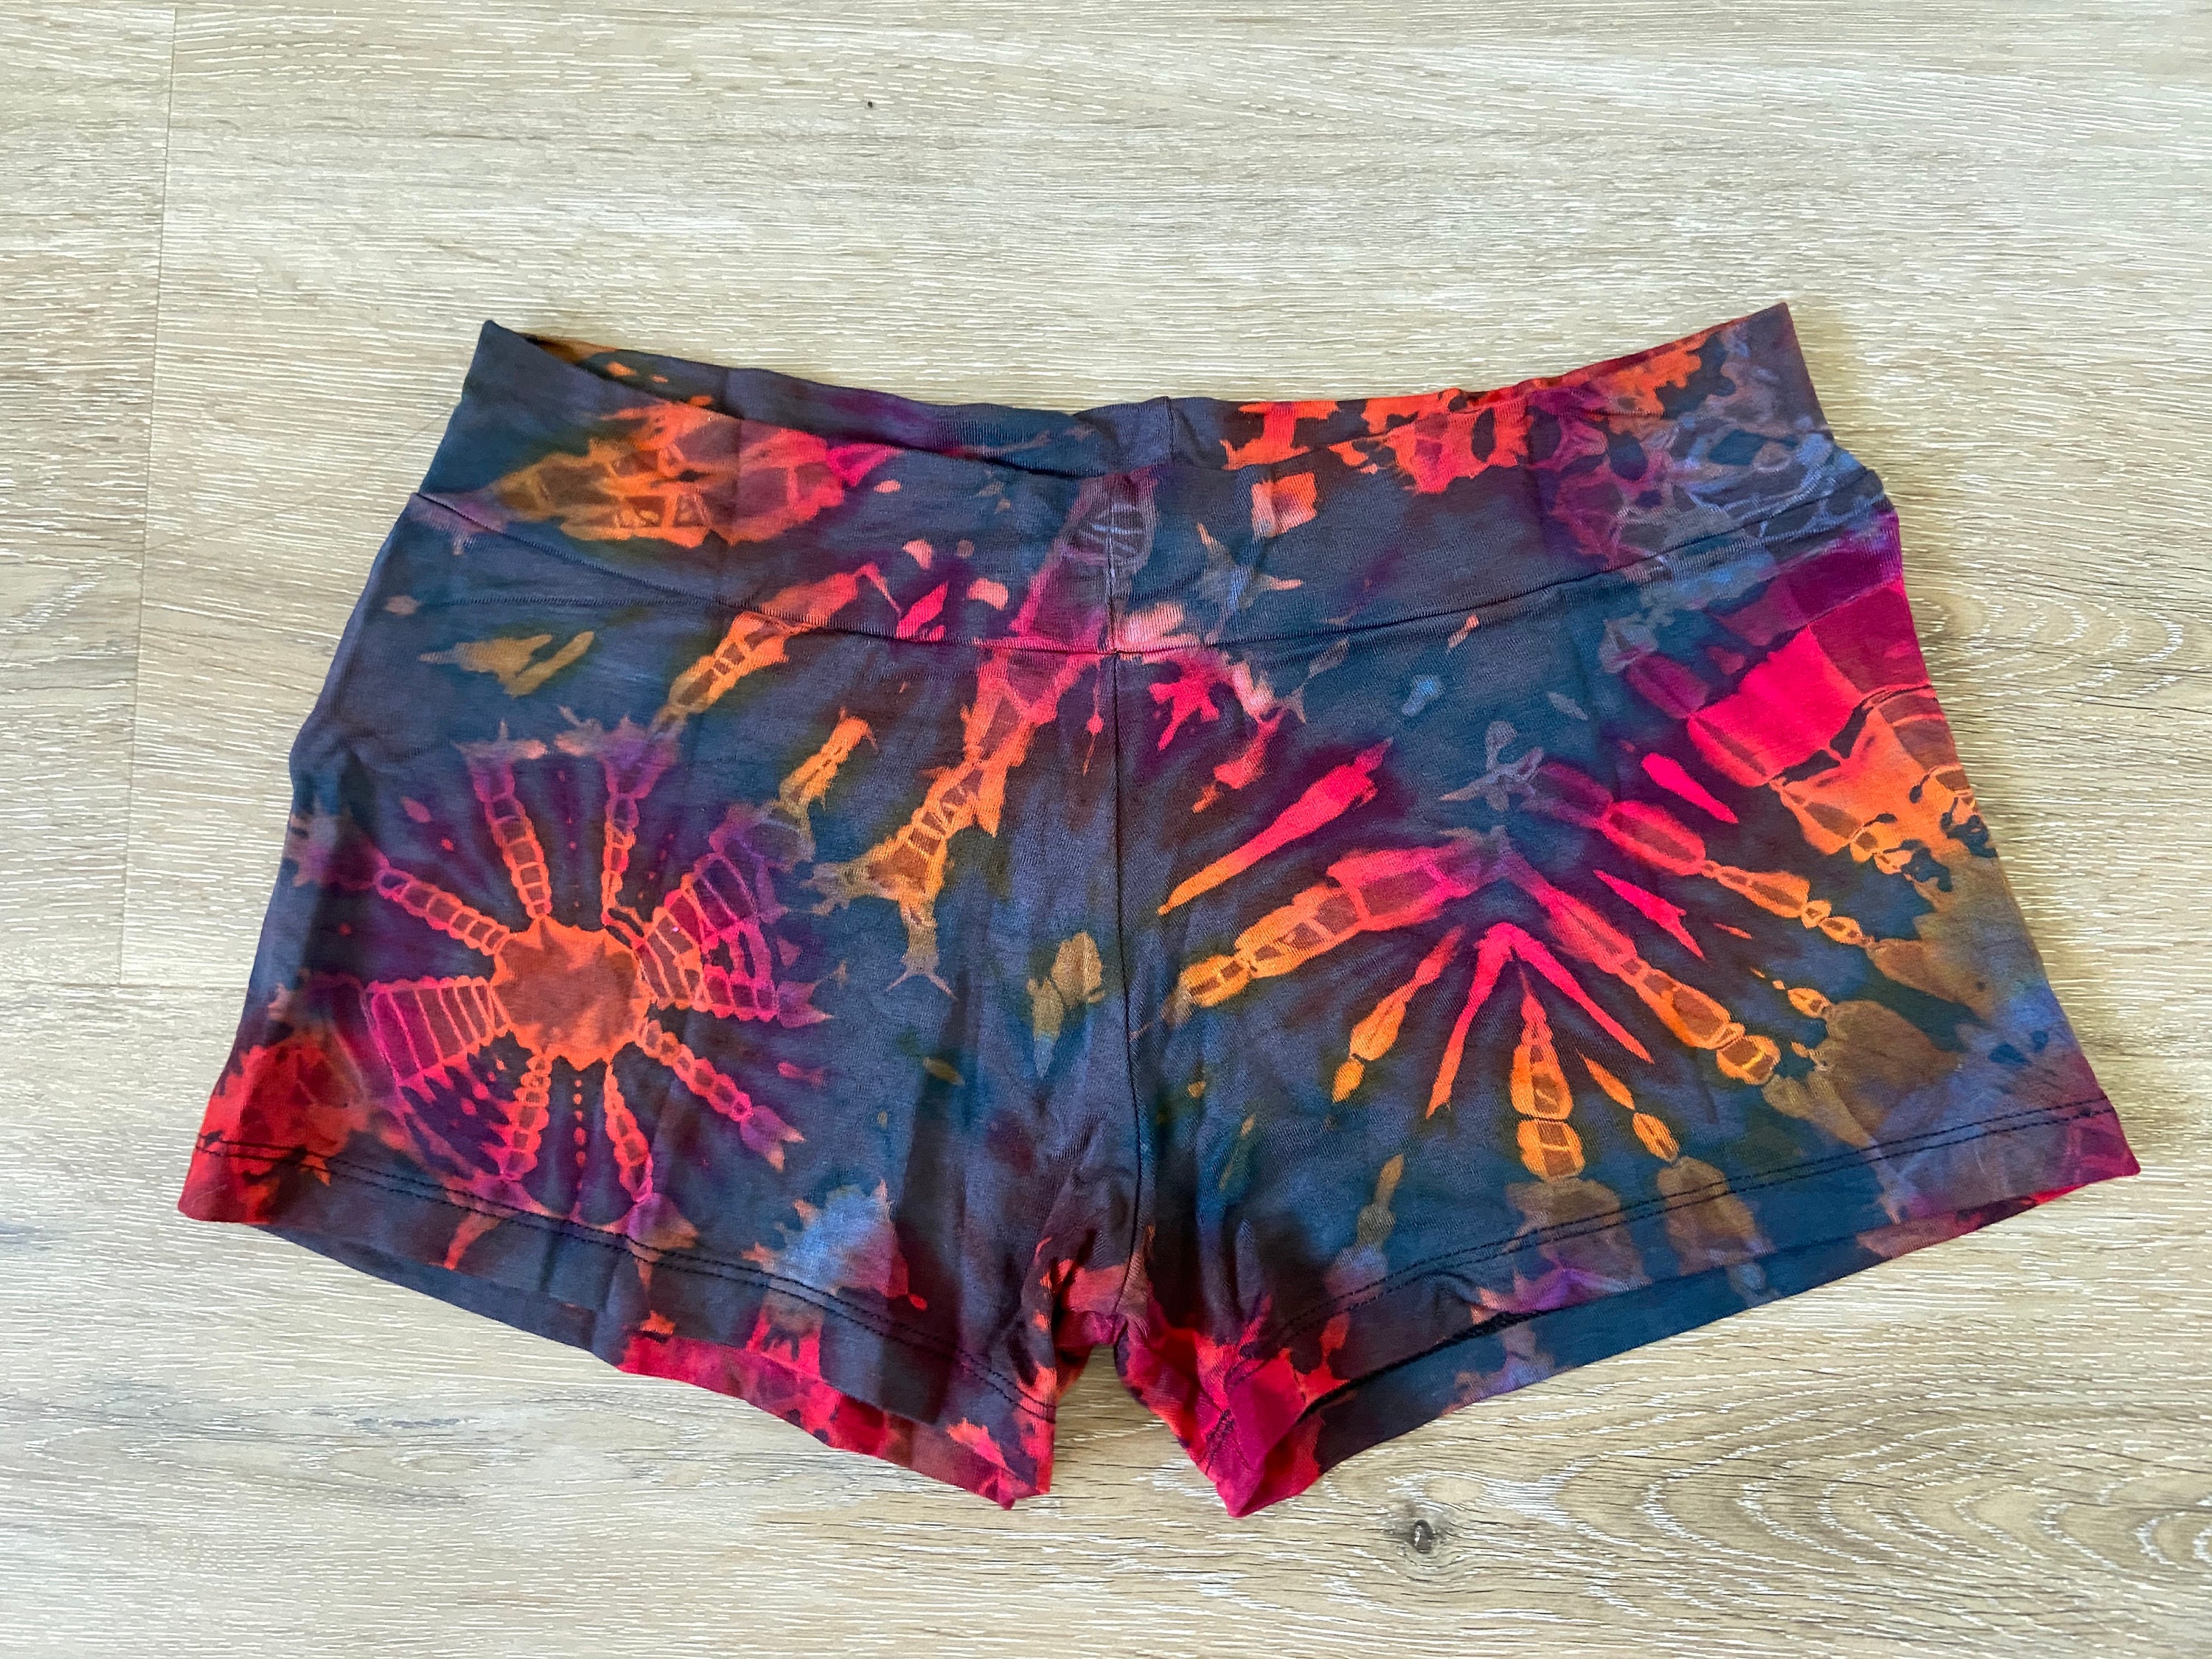 Tie dye shorts spandex shorts festival shorts yoga shorts | Etsy